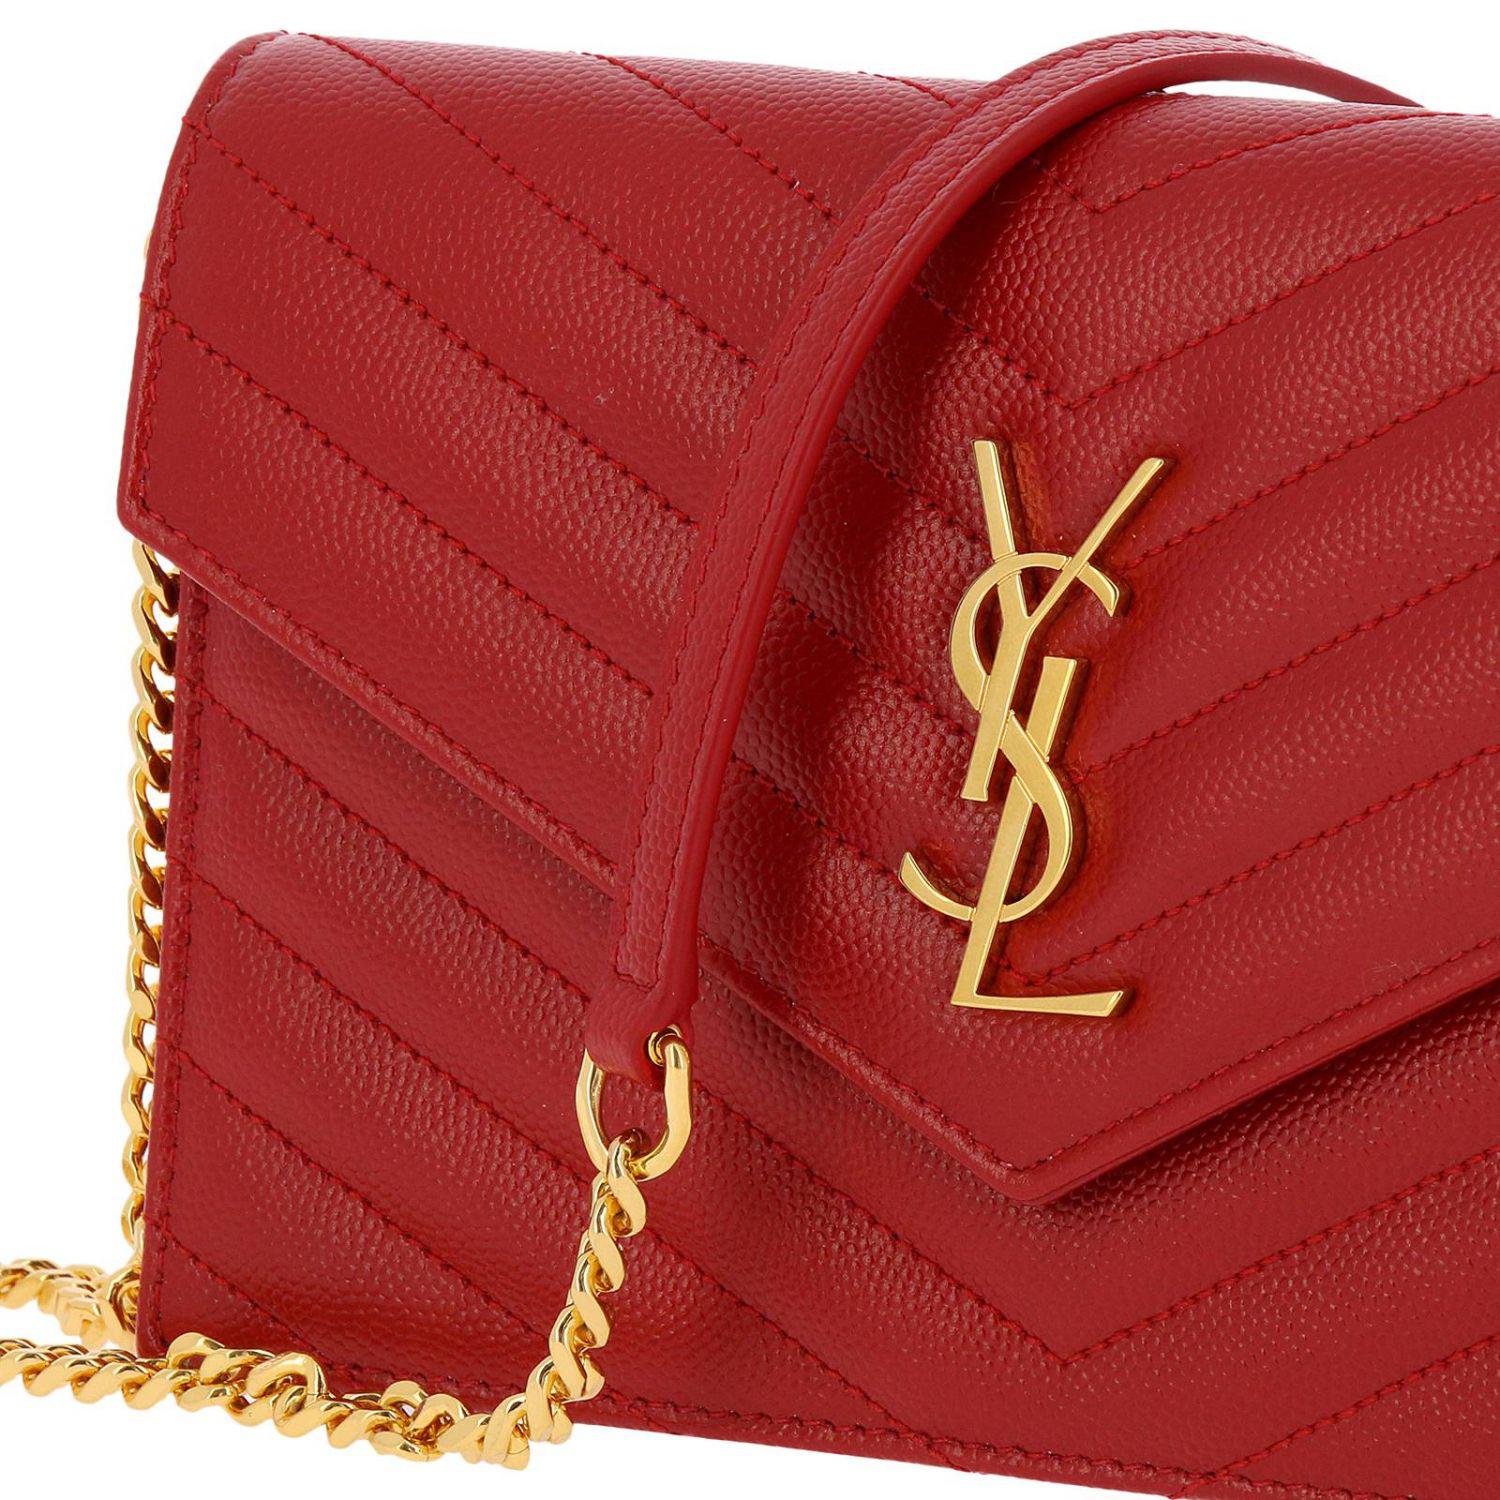 Yves Saint Laurent Grain De Poudre Envelope Chain Bag